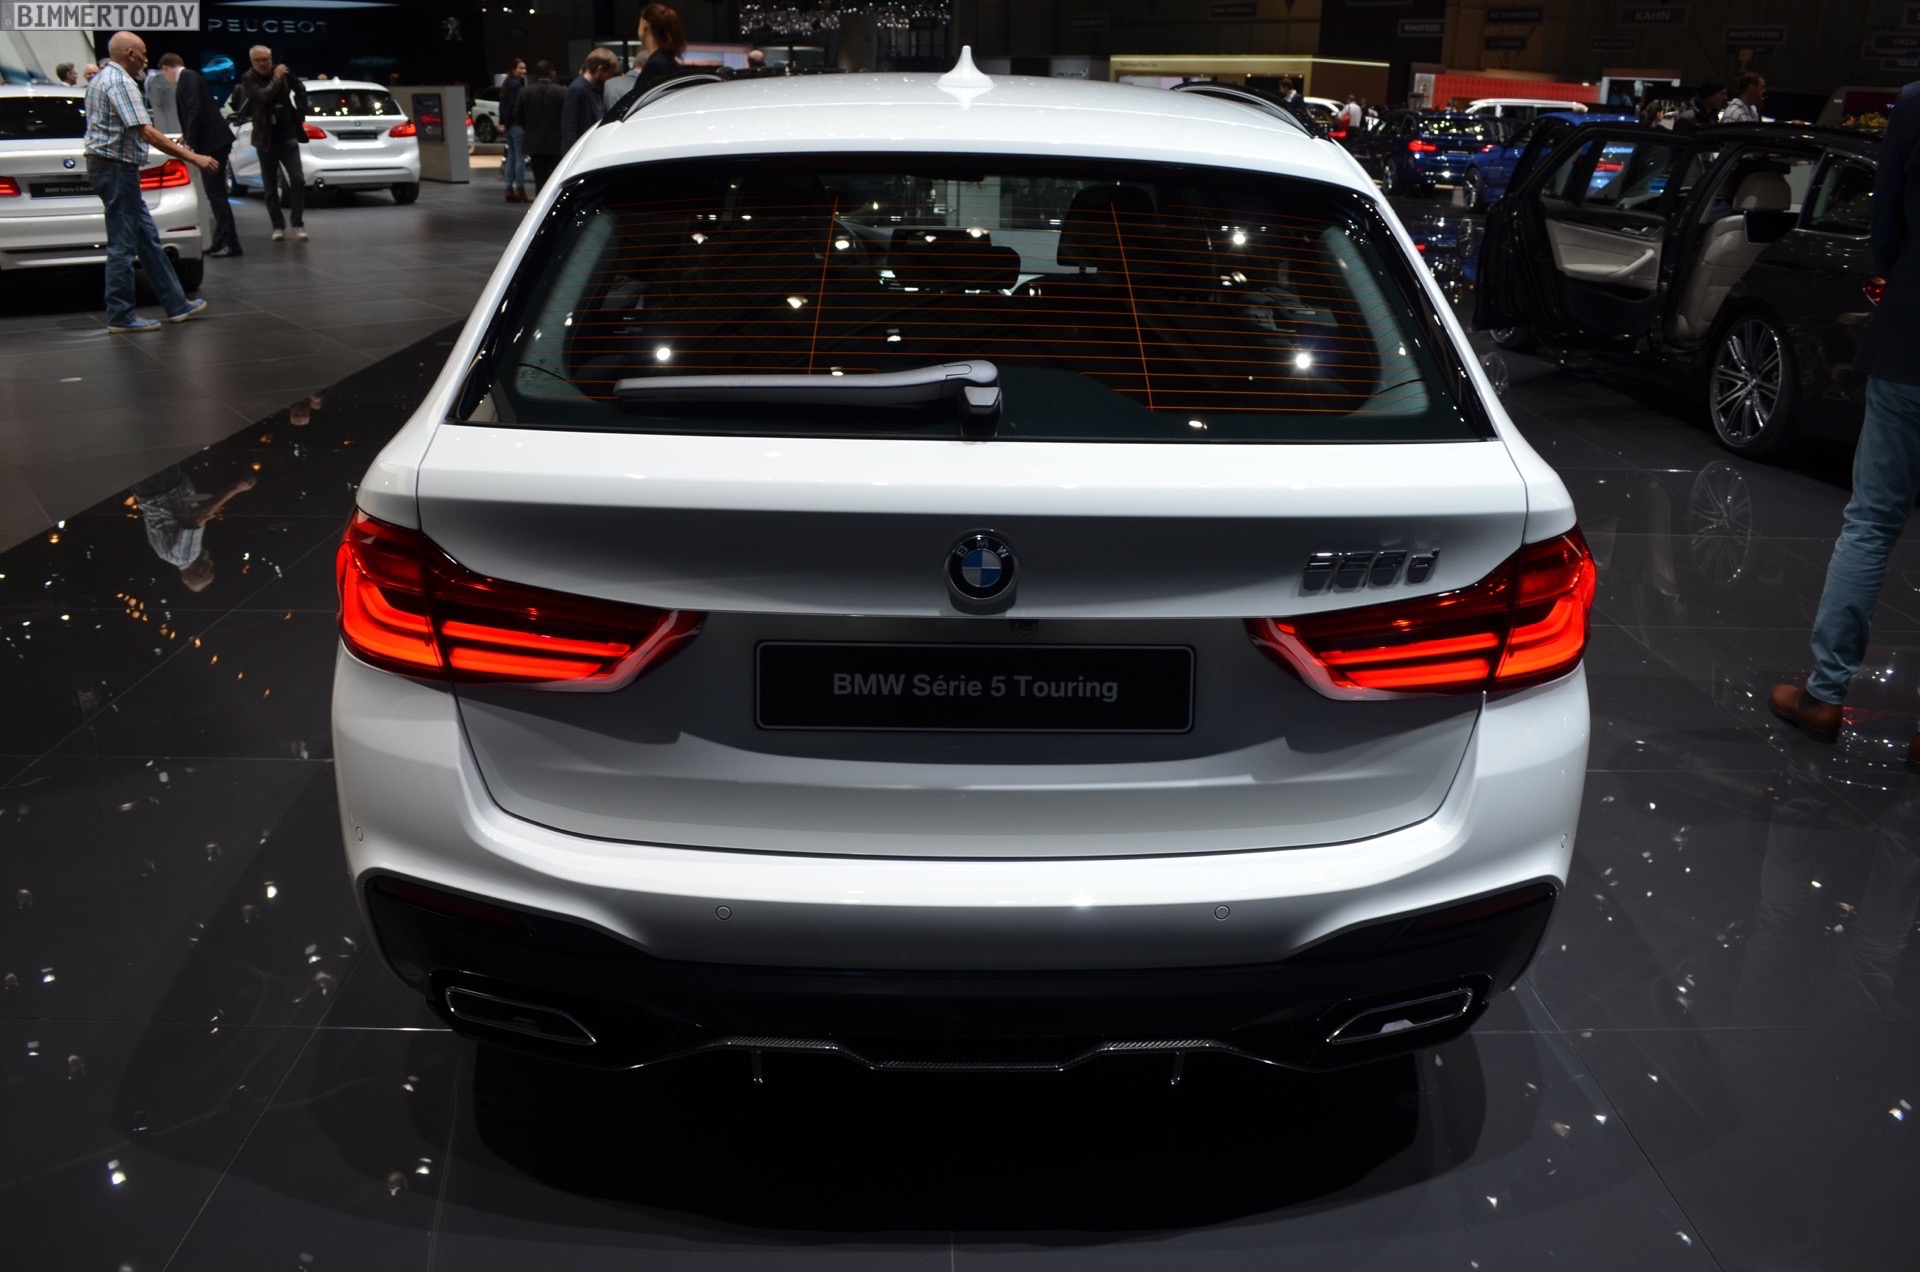 Live-Fotos: BMW 5er G30 mit BMW M Performance-Tuning - Allgemein